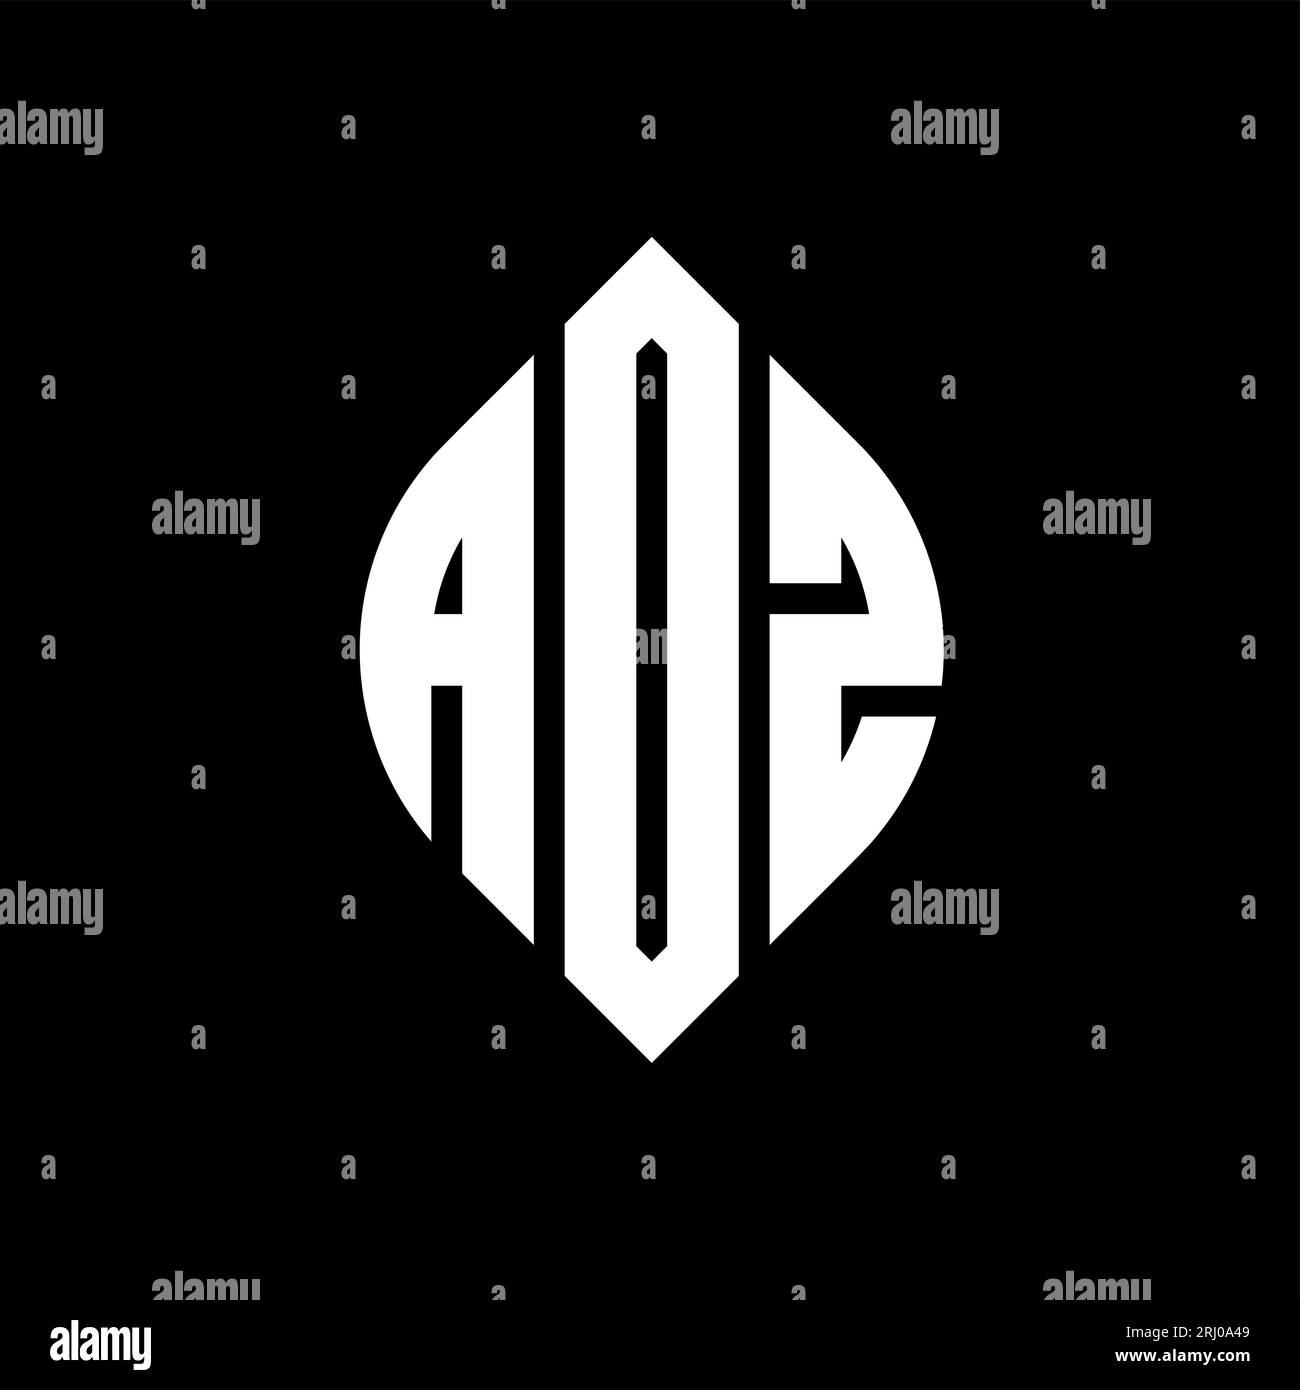 ADZ-Logo mit kreisförmigem Buchstaben, Kreis- und Ellipsenform. ADZ-Ellipsenbuchstaben im typografischen Stil. Die drei Initialen bilden ein kreisförmiges Logo. ADZ CI Stock Vektor